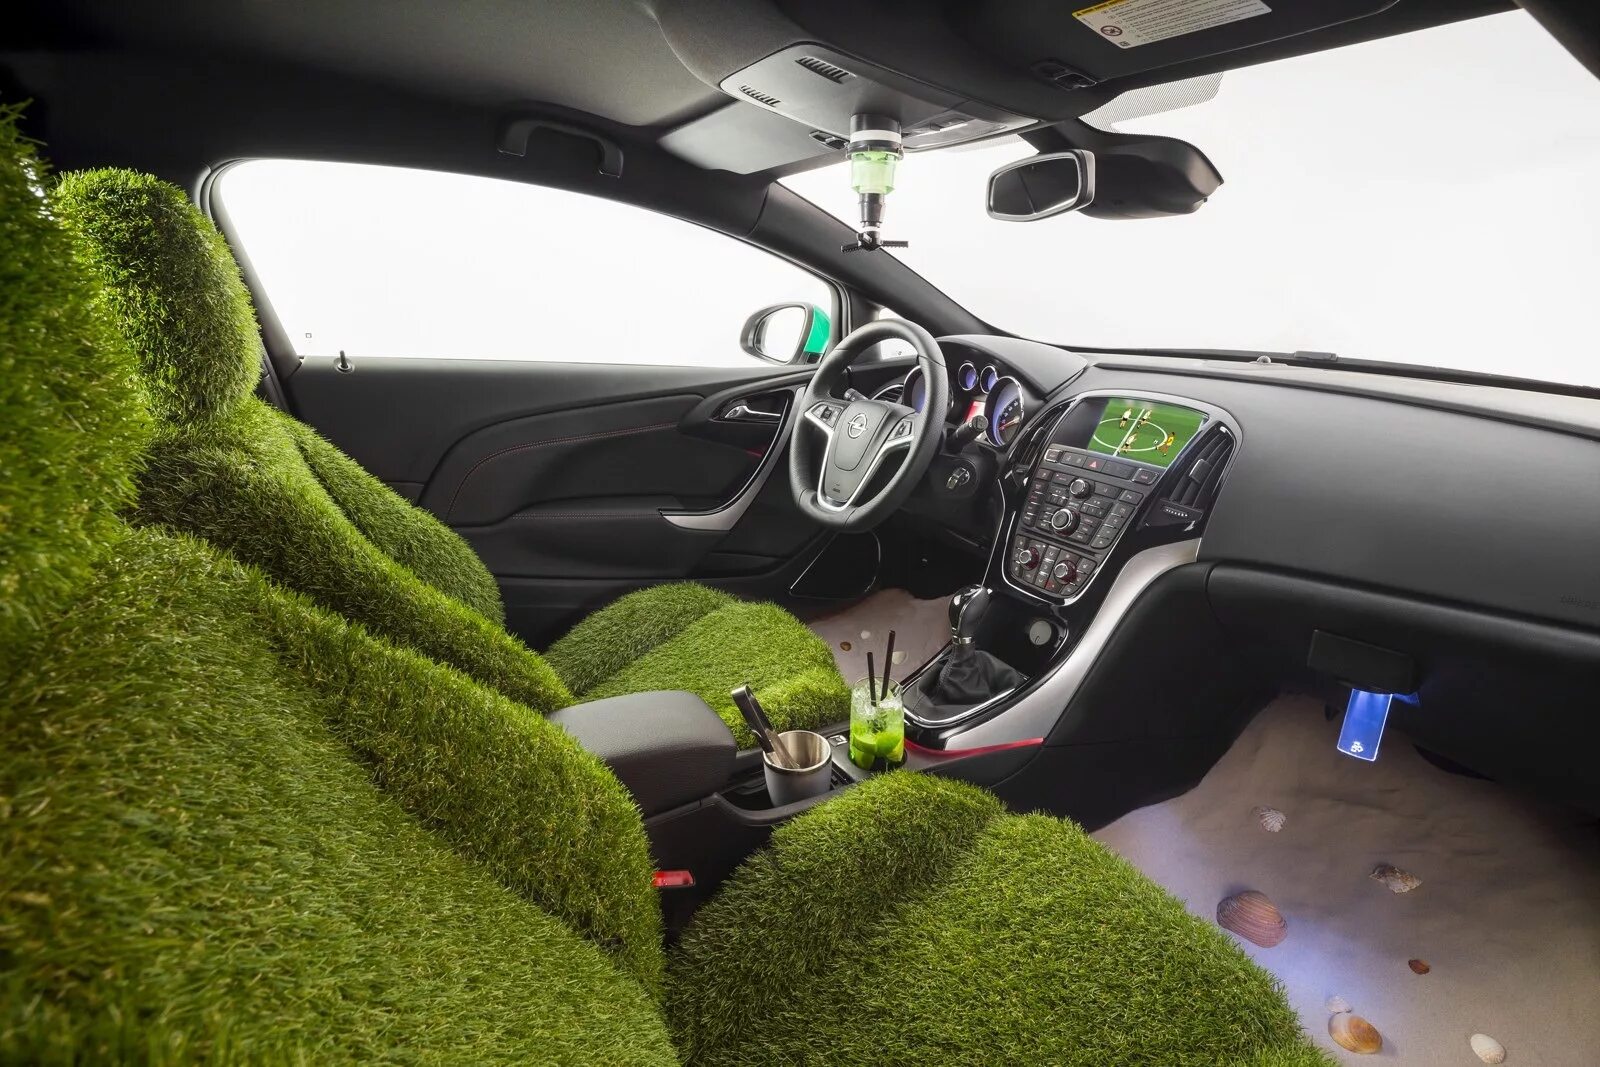 Машины точка ру. Свежесть в салоне автомобиля. Искусственный газон в салон машины. Машина с растениями. Машина на траве.